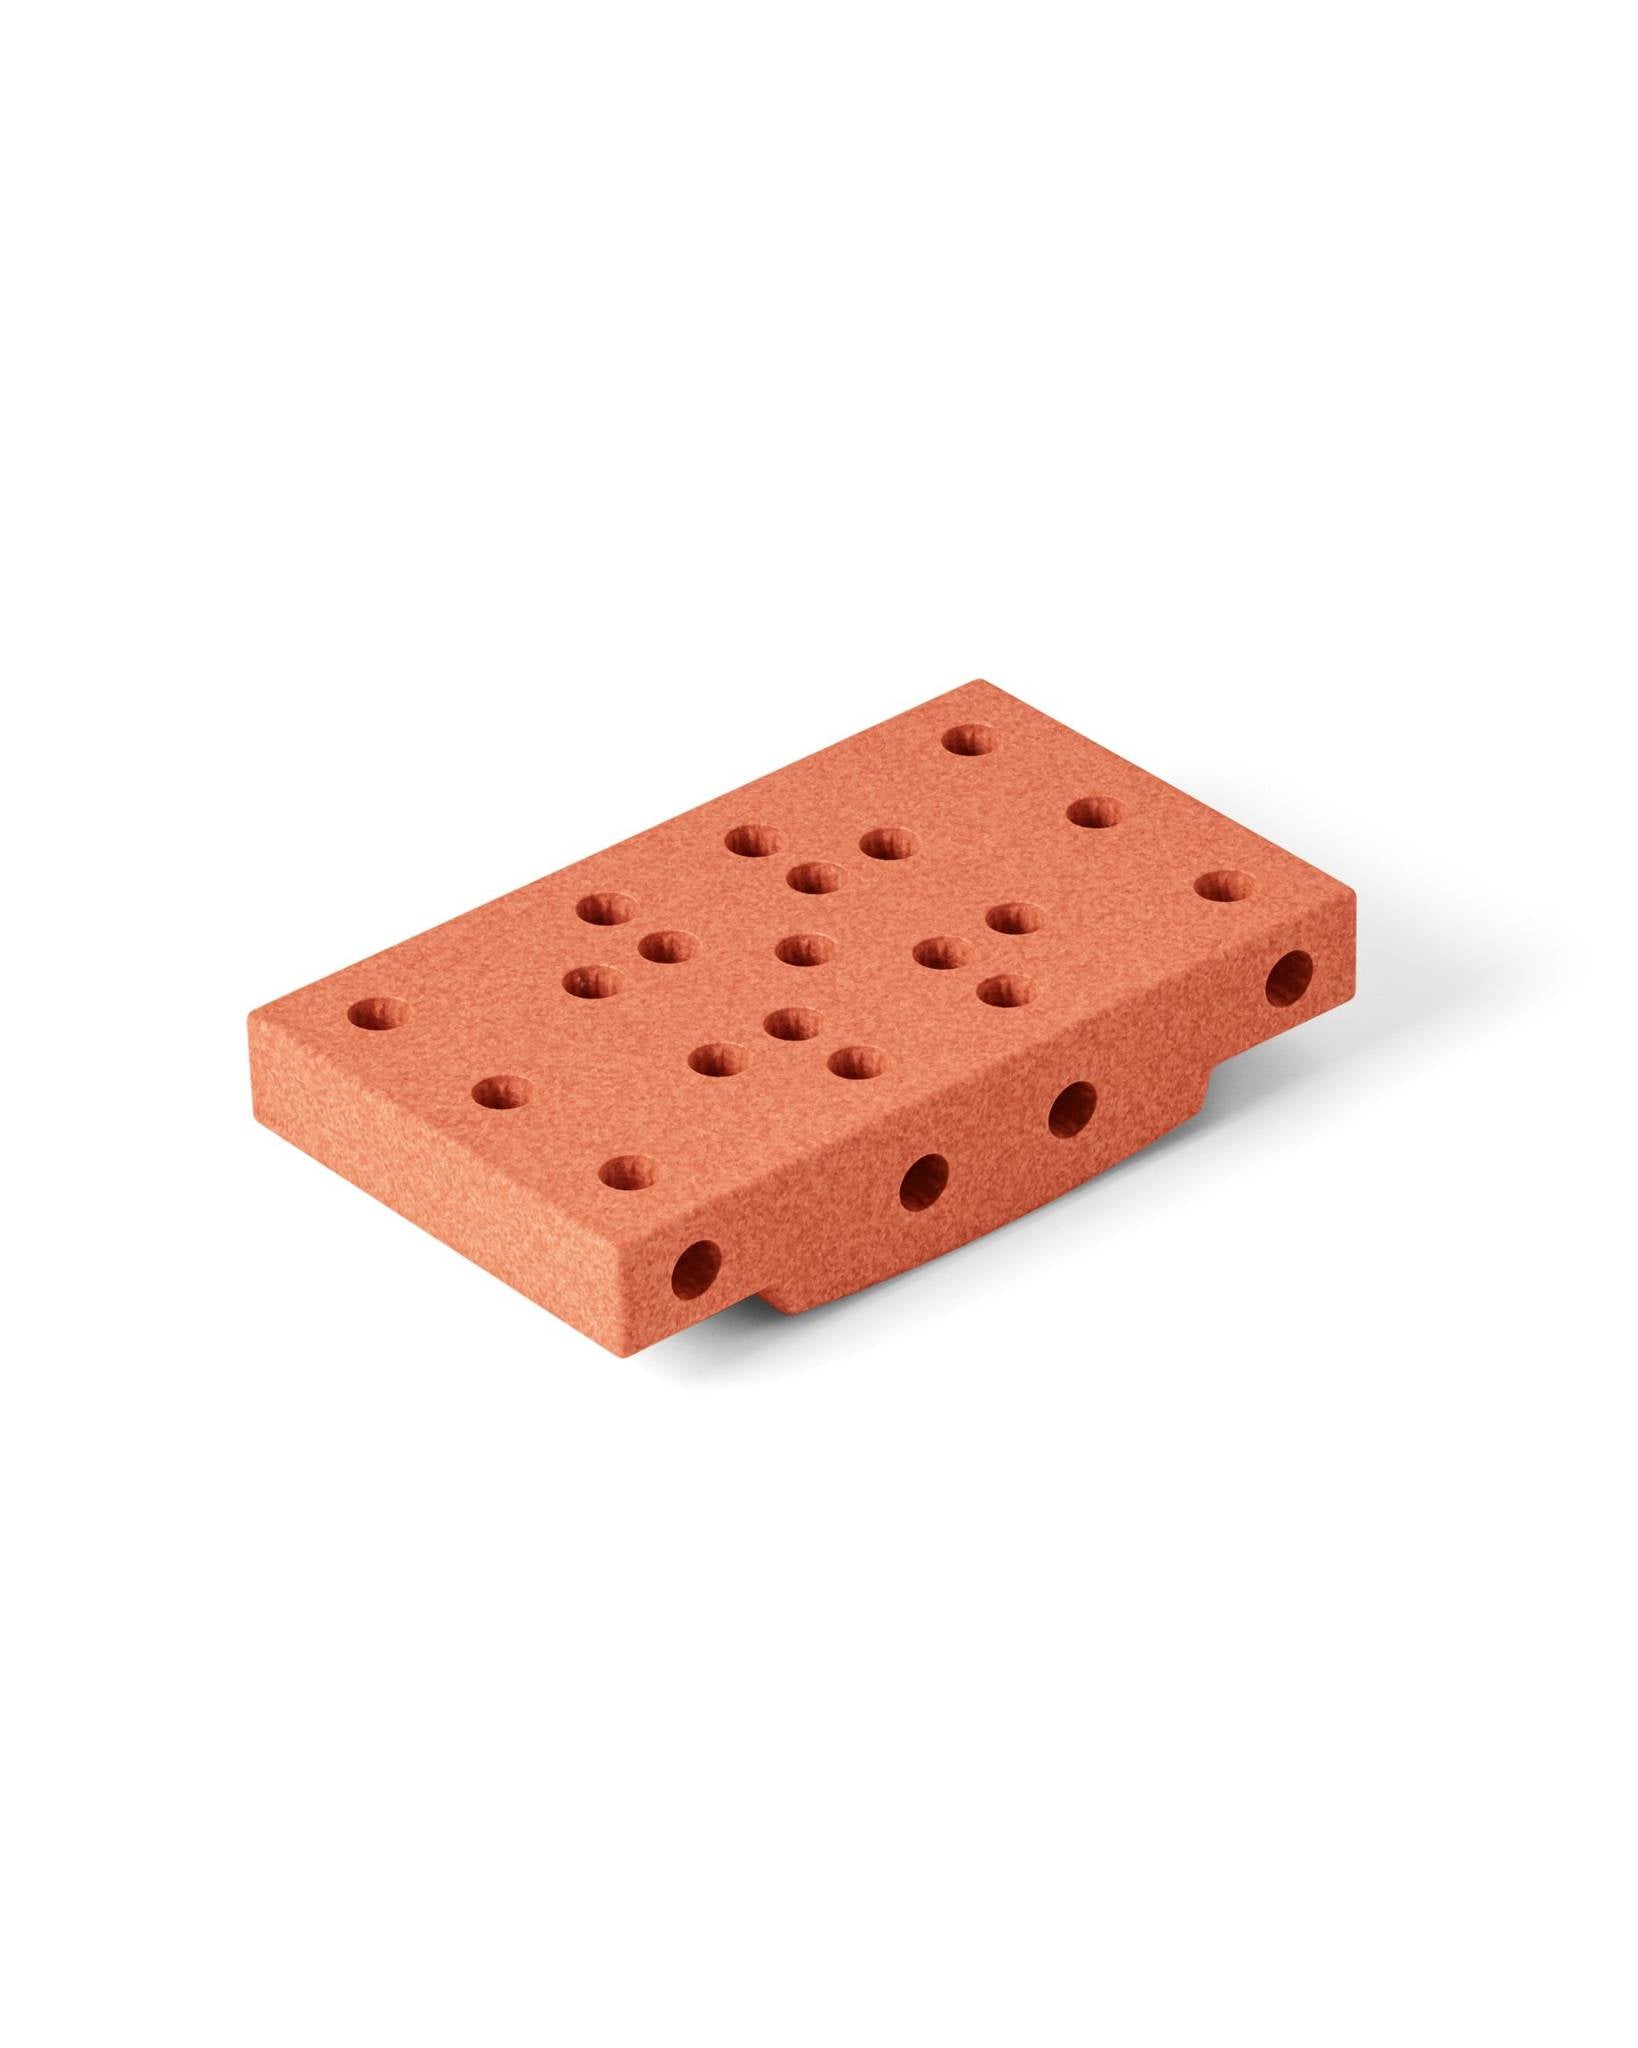 Module - Block Base - sensory foam block, orange